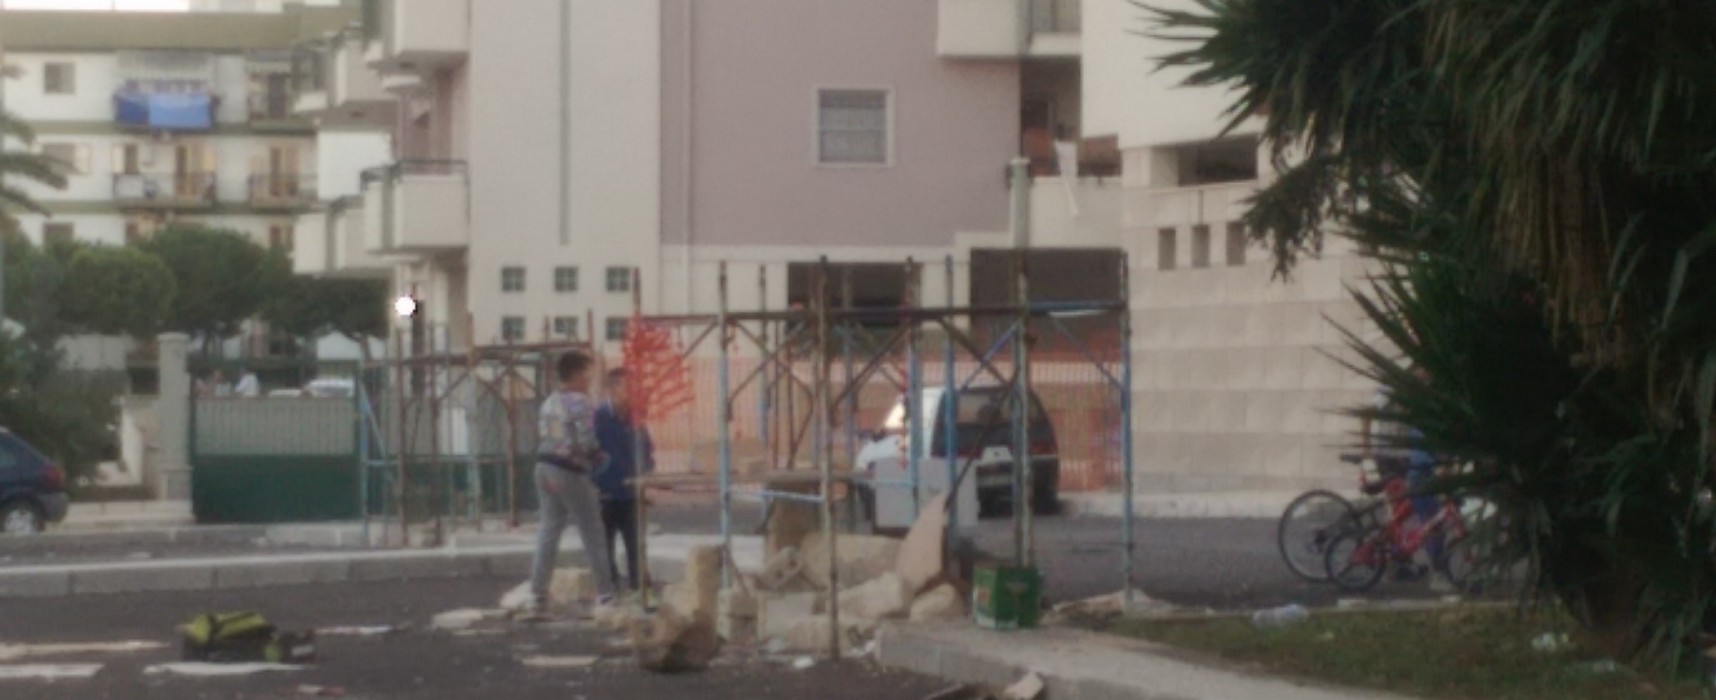 Giochi pericolosi nel quartiere San Pietro, bambini alle prese con impalcatura e blocchi di pietra